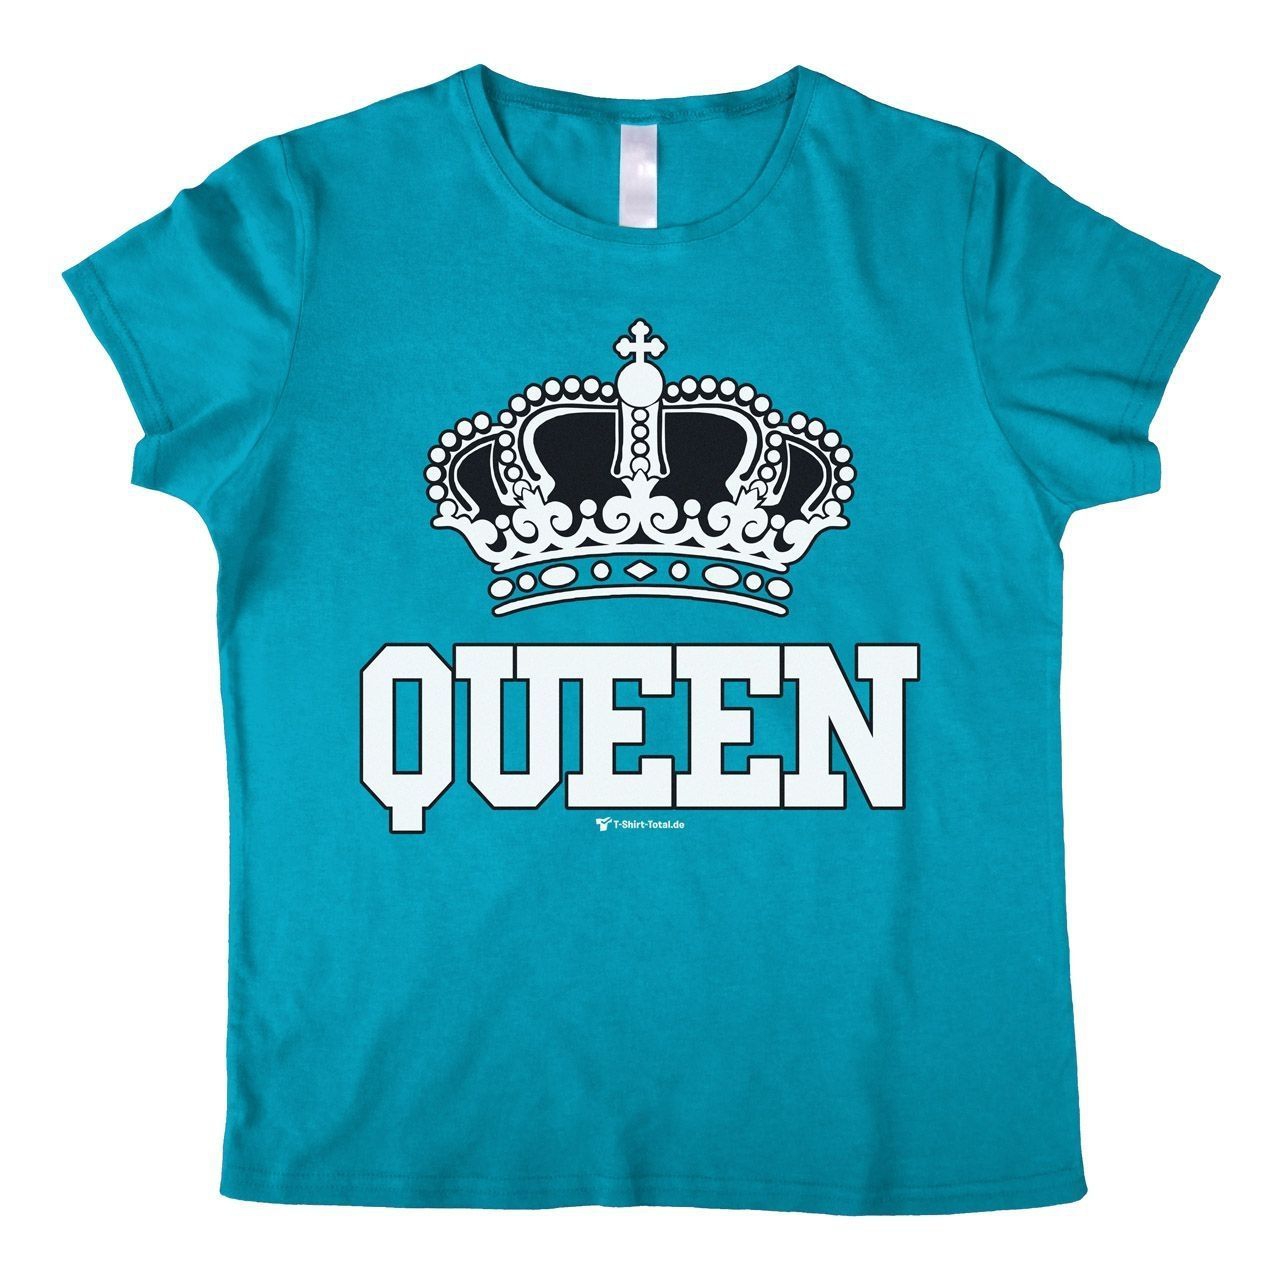 Queen Woman T-Shirt türkis Medium